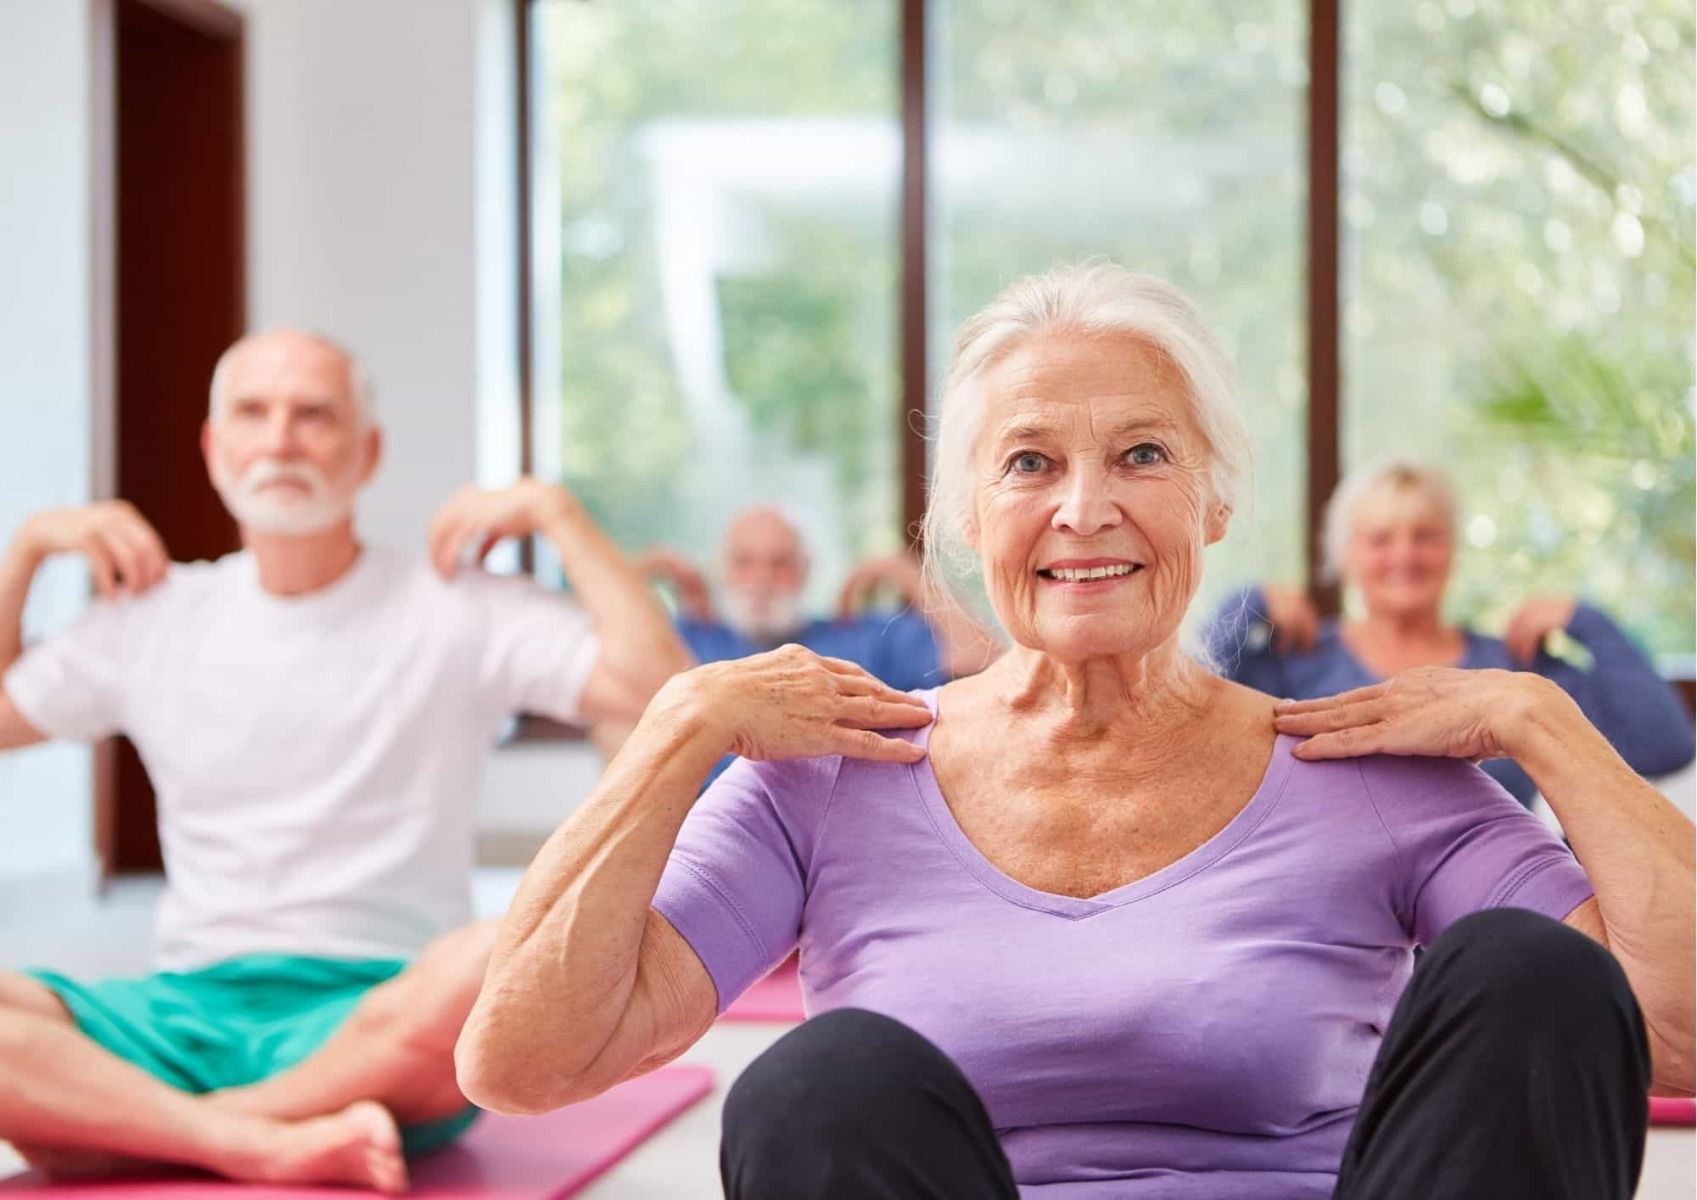 Exercise reduces risk of stroke_bettercaremarket